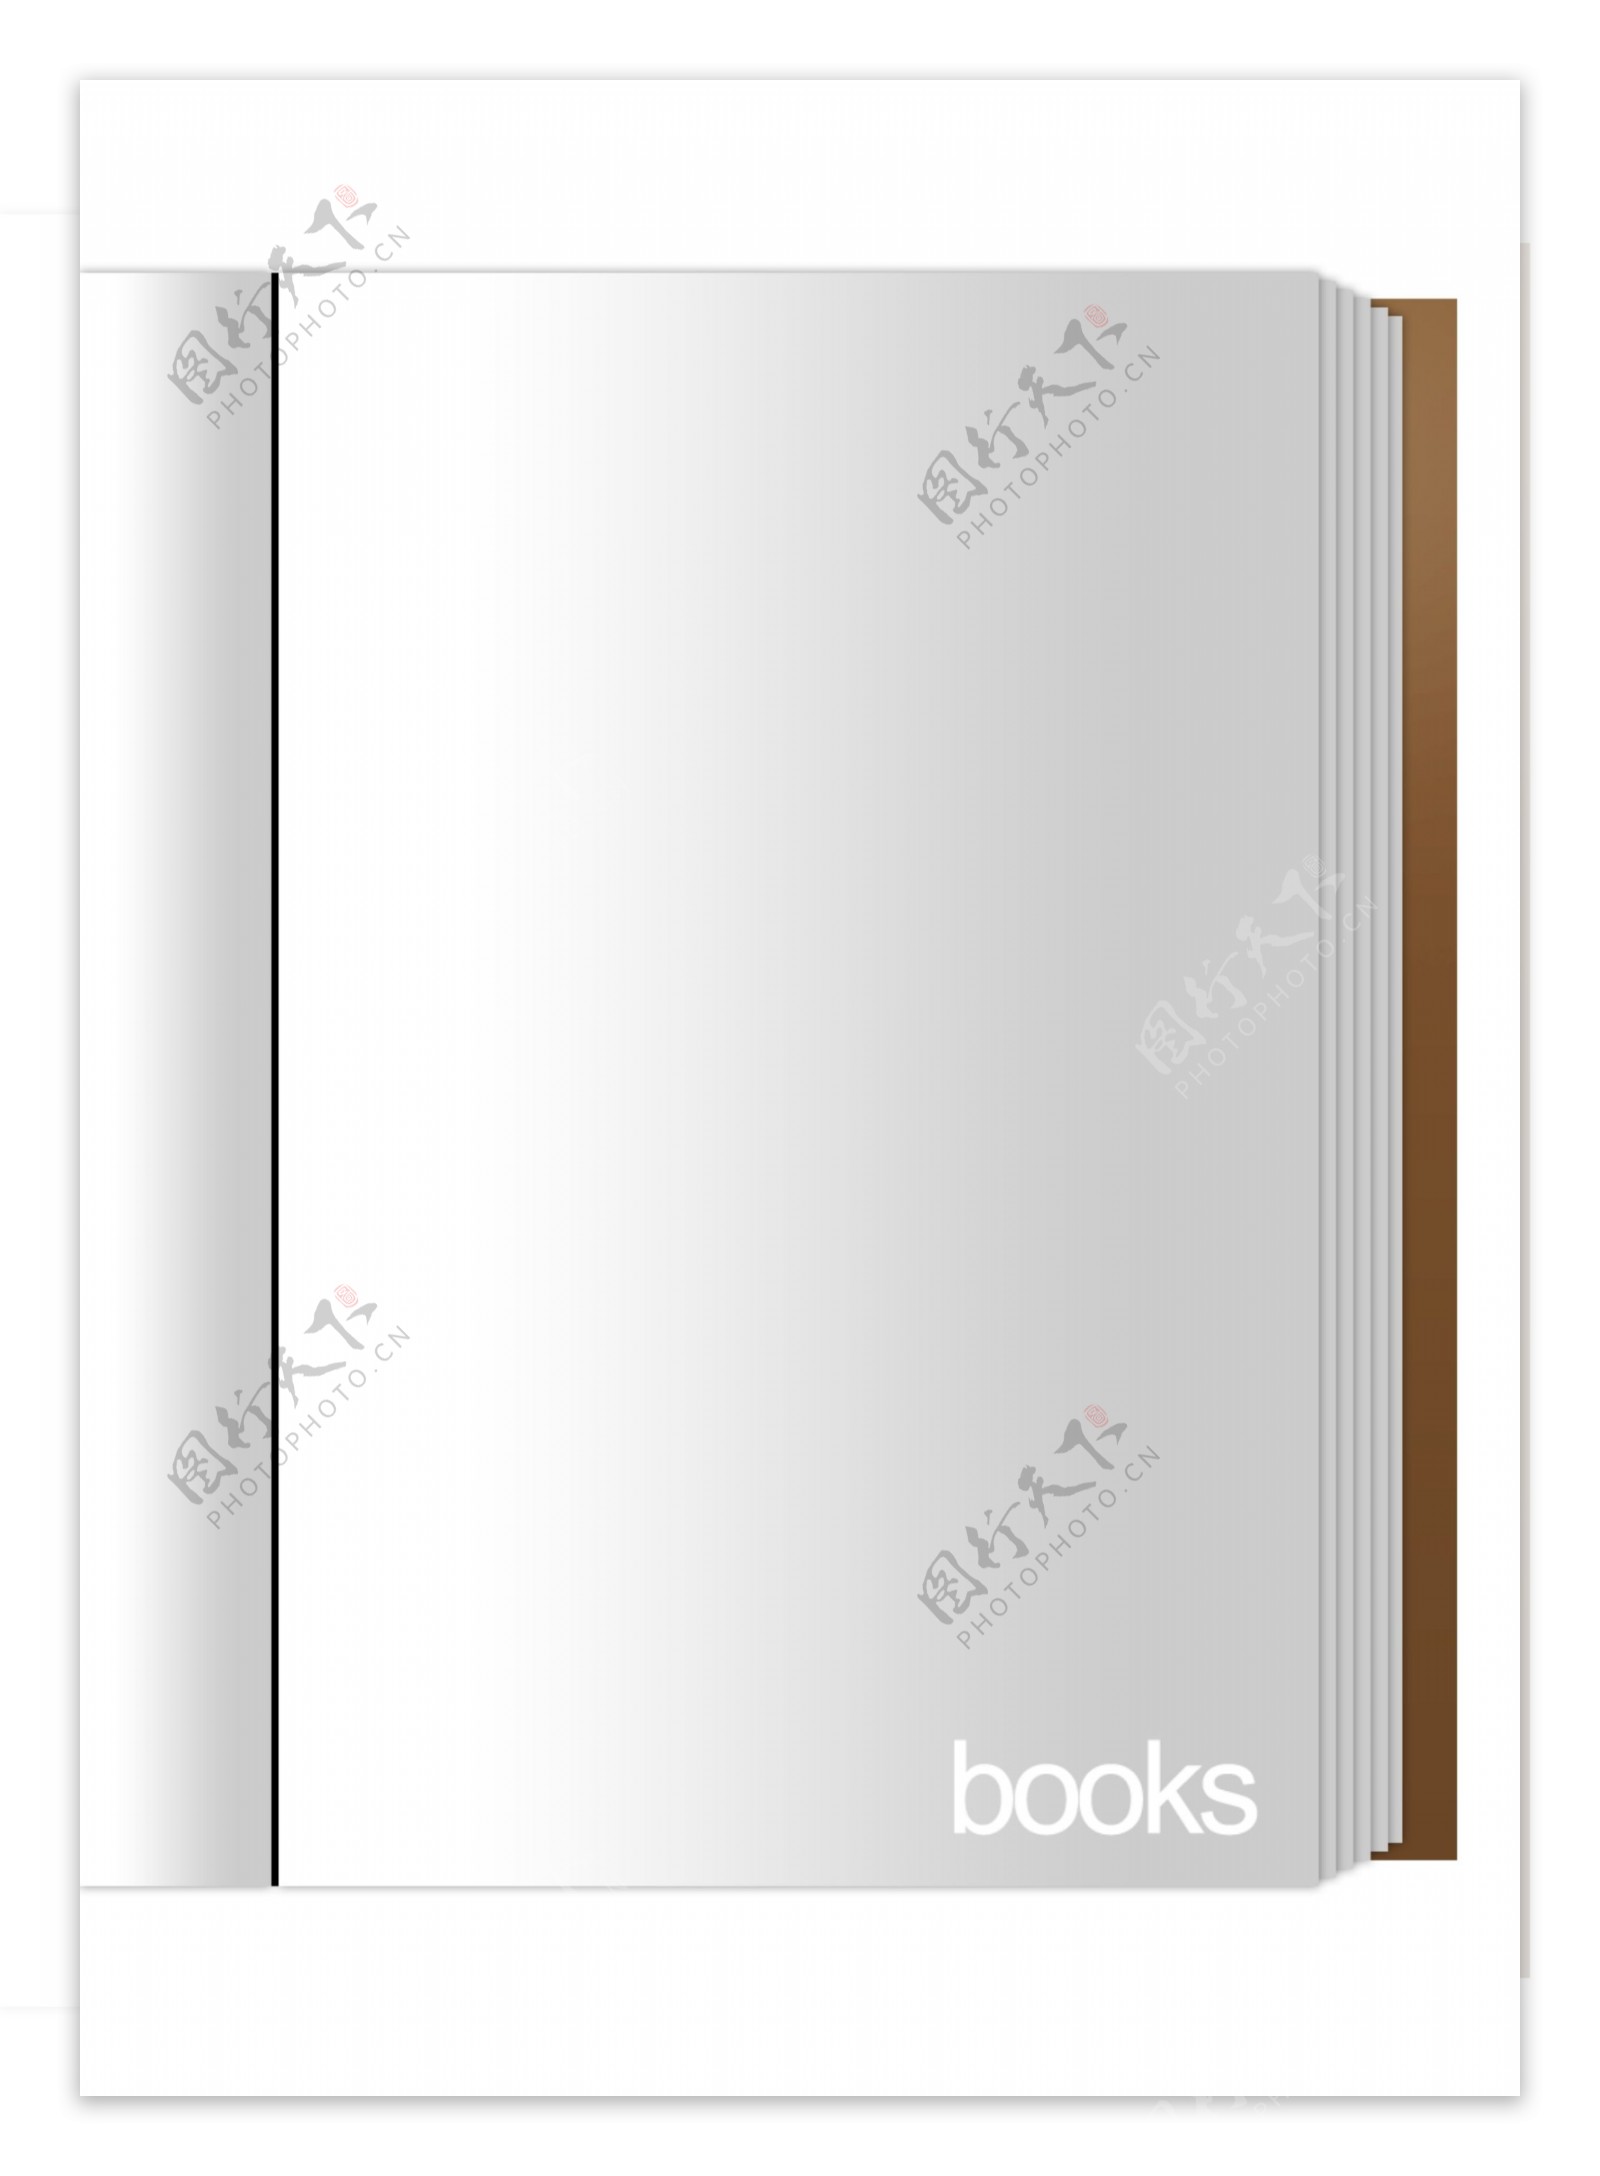 书籍图书封面设计效果图样机模板v2 Book Mockup V.2-变色鱼